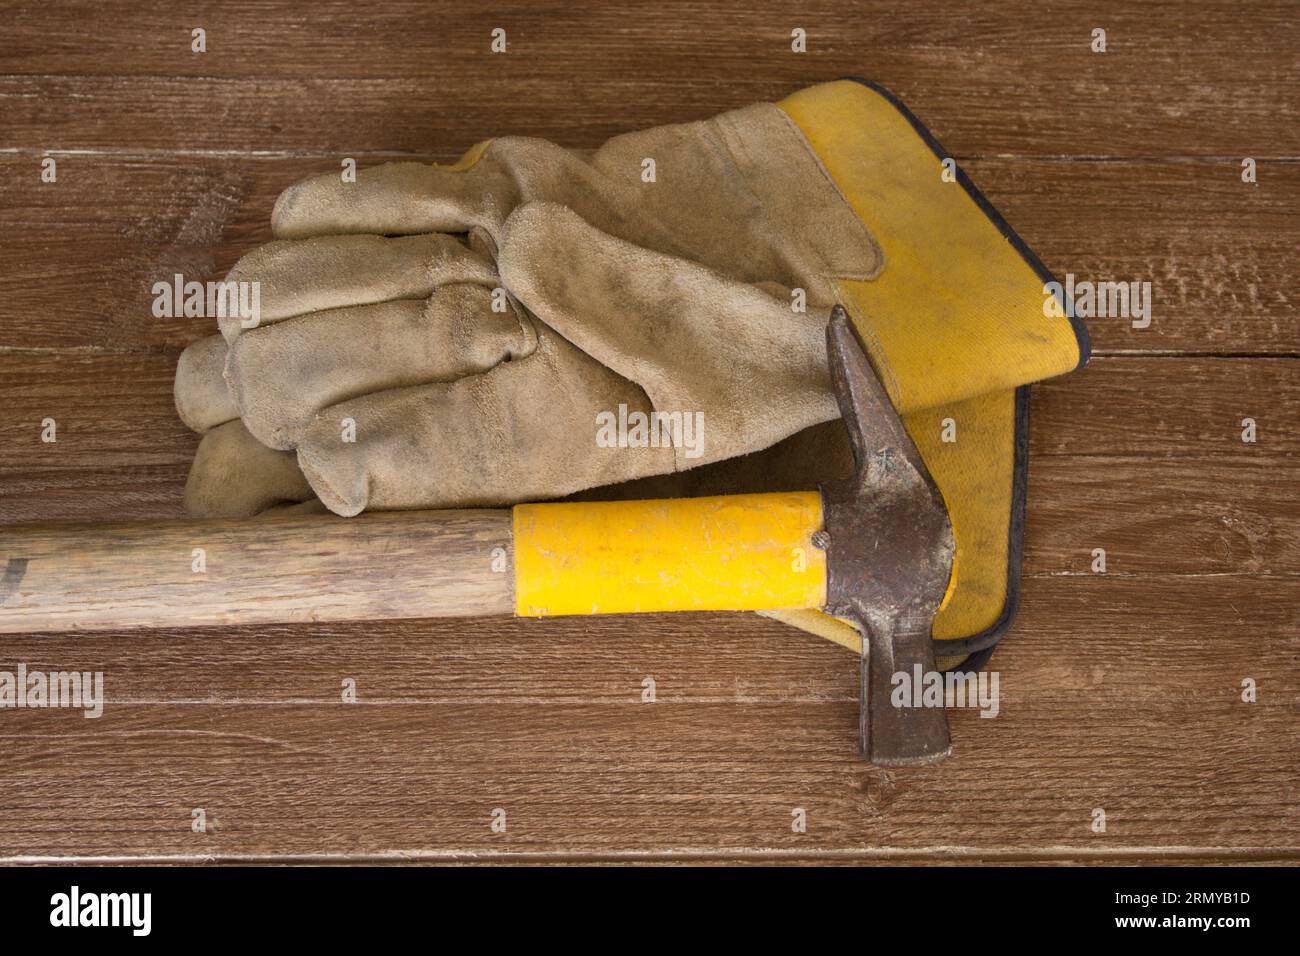 Bild eines maurerhammers und eines Arbeitshandschuhs. Verweis auf manuelle Arbeit und Sicherheit am Arbeitsplatz. Stockfoto